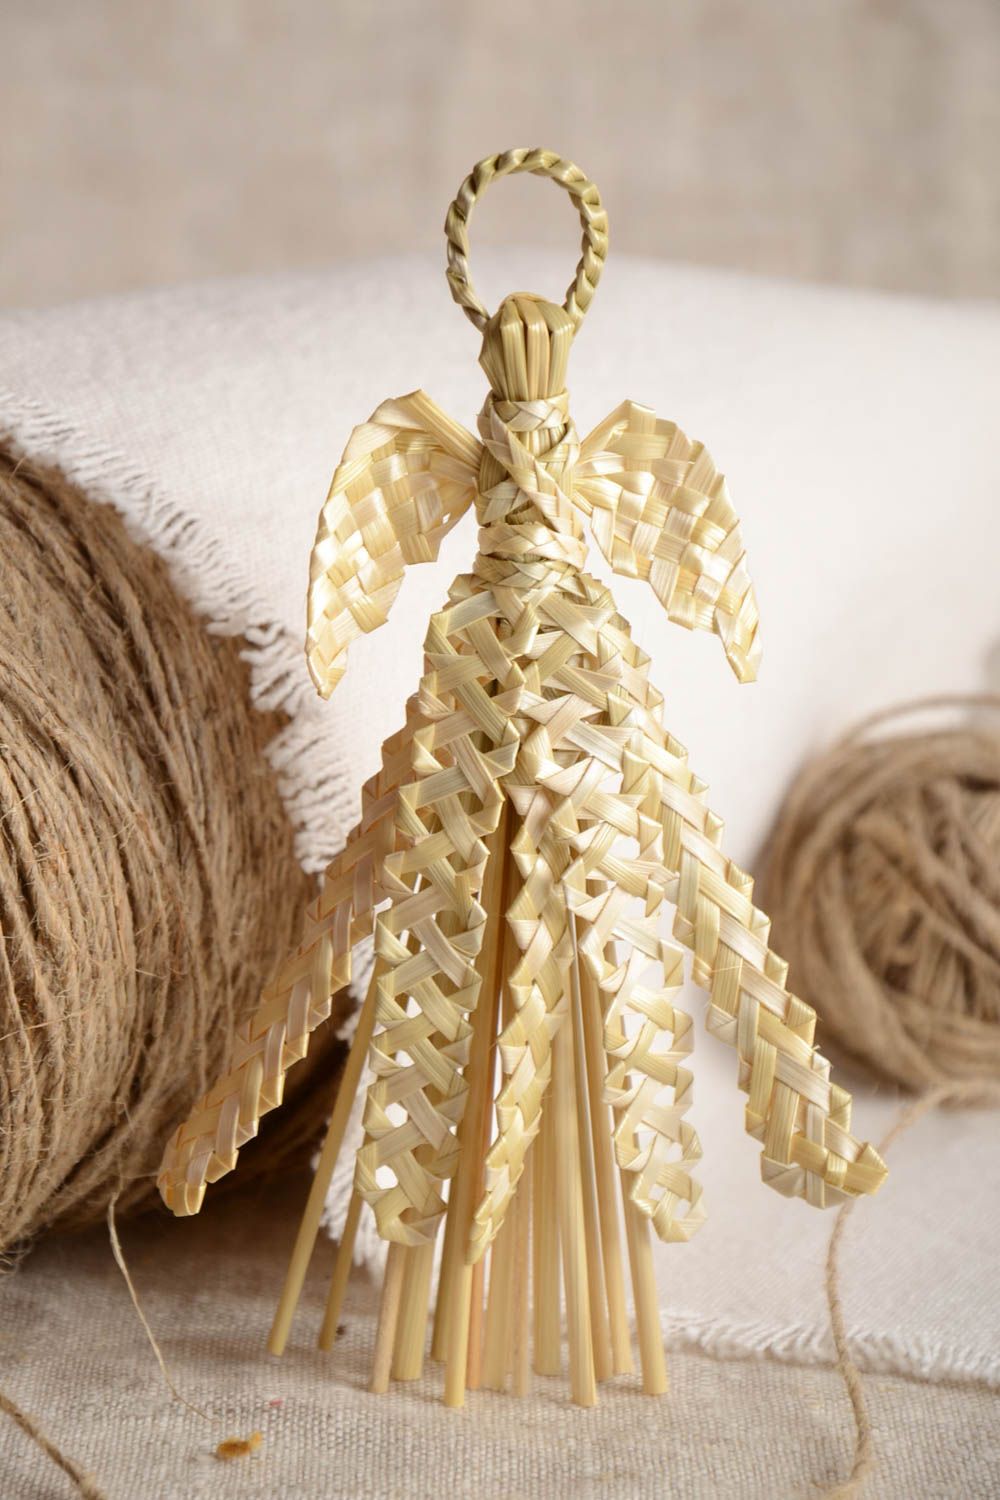 Интерьерная подвеска плетеная из соломы елочная игрушка ручной работы эко декор фото 1